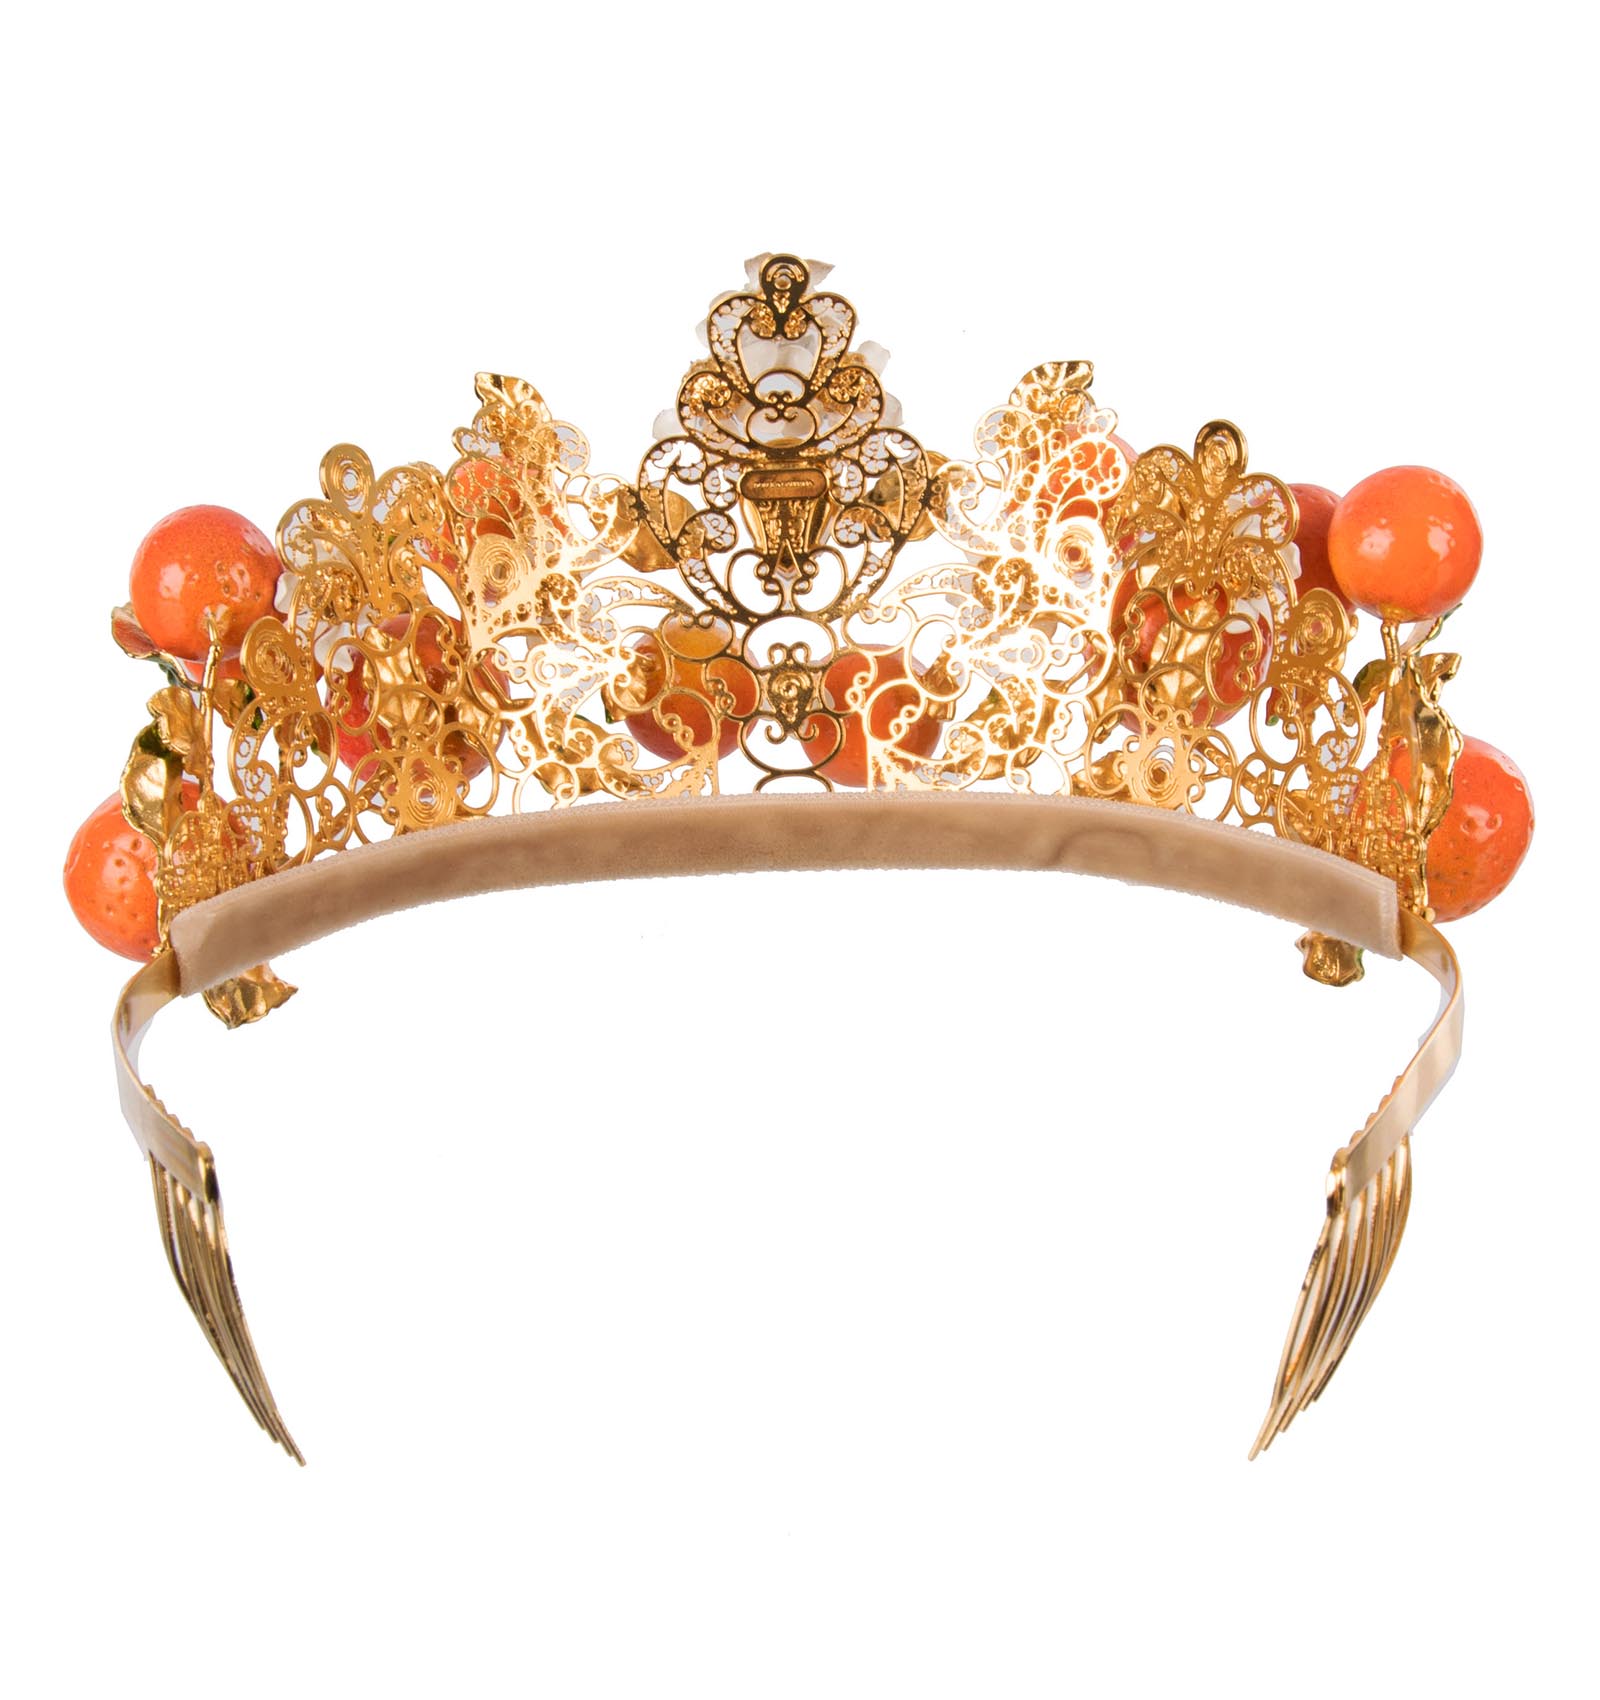 Дольче габбана корона цена. Dolce Gabbana Crown. Дольче Габбана корона. Dolce Gabbana Orange. Dolce Gabbana Crown женский.